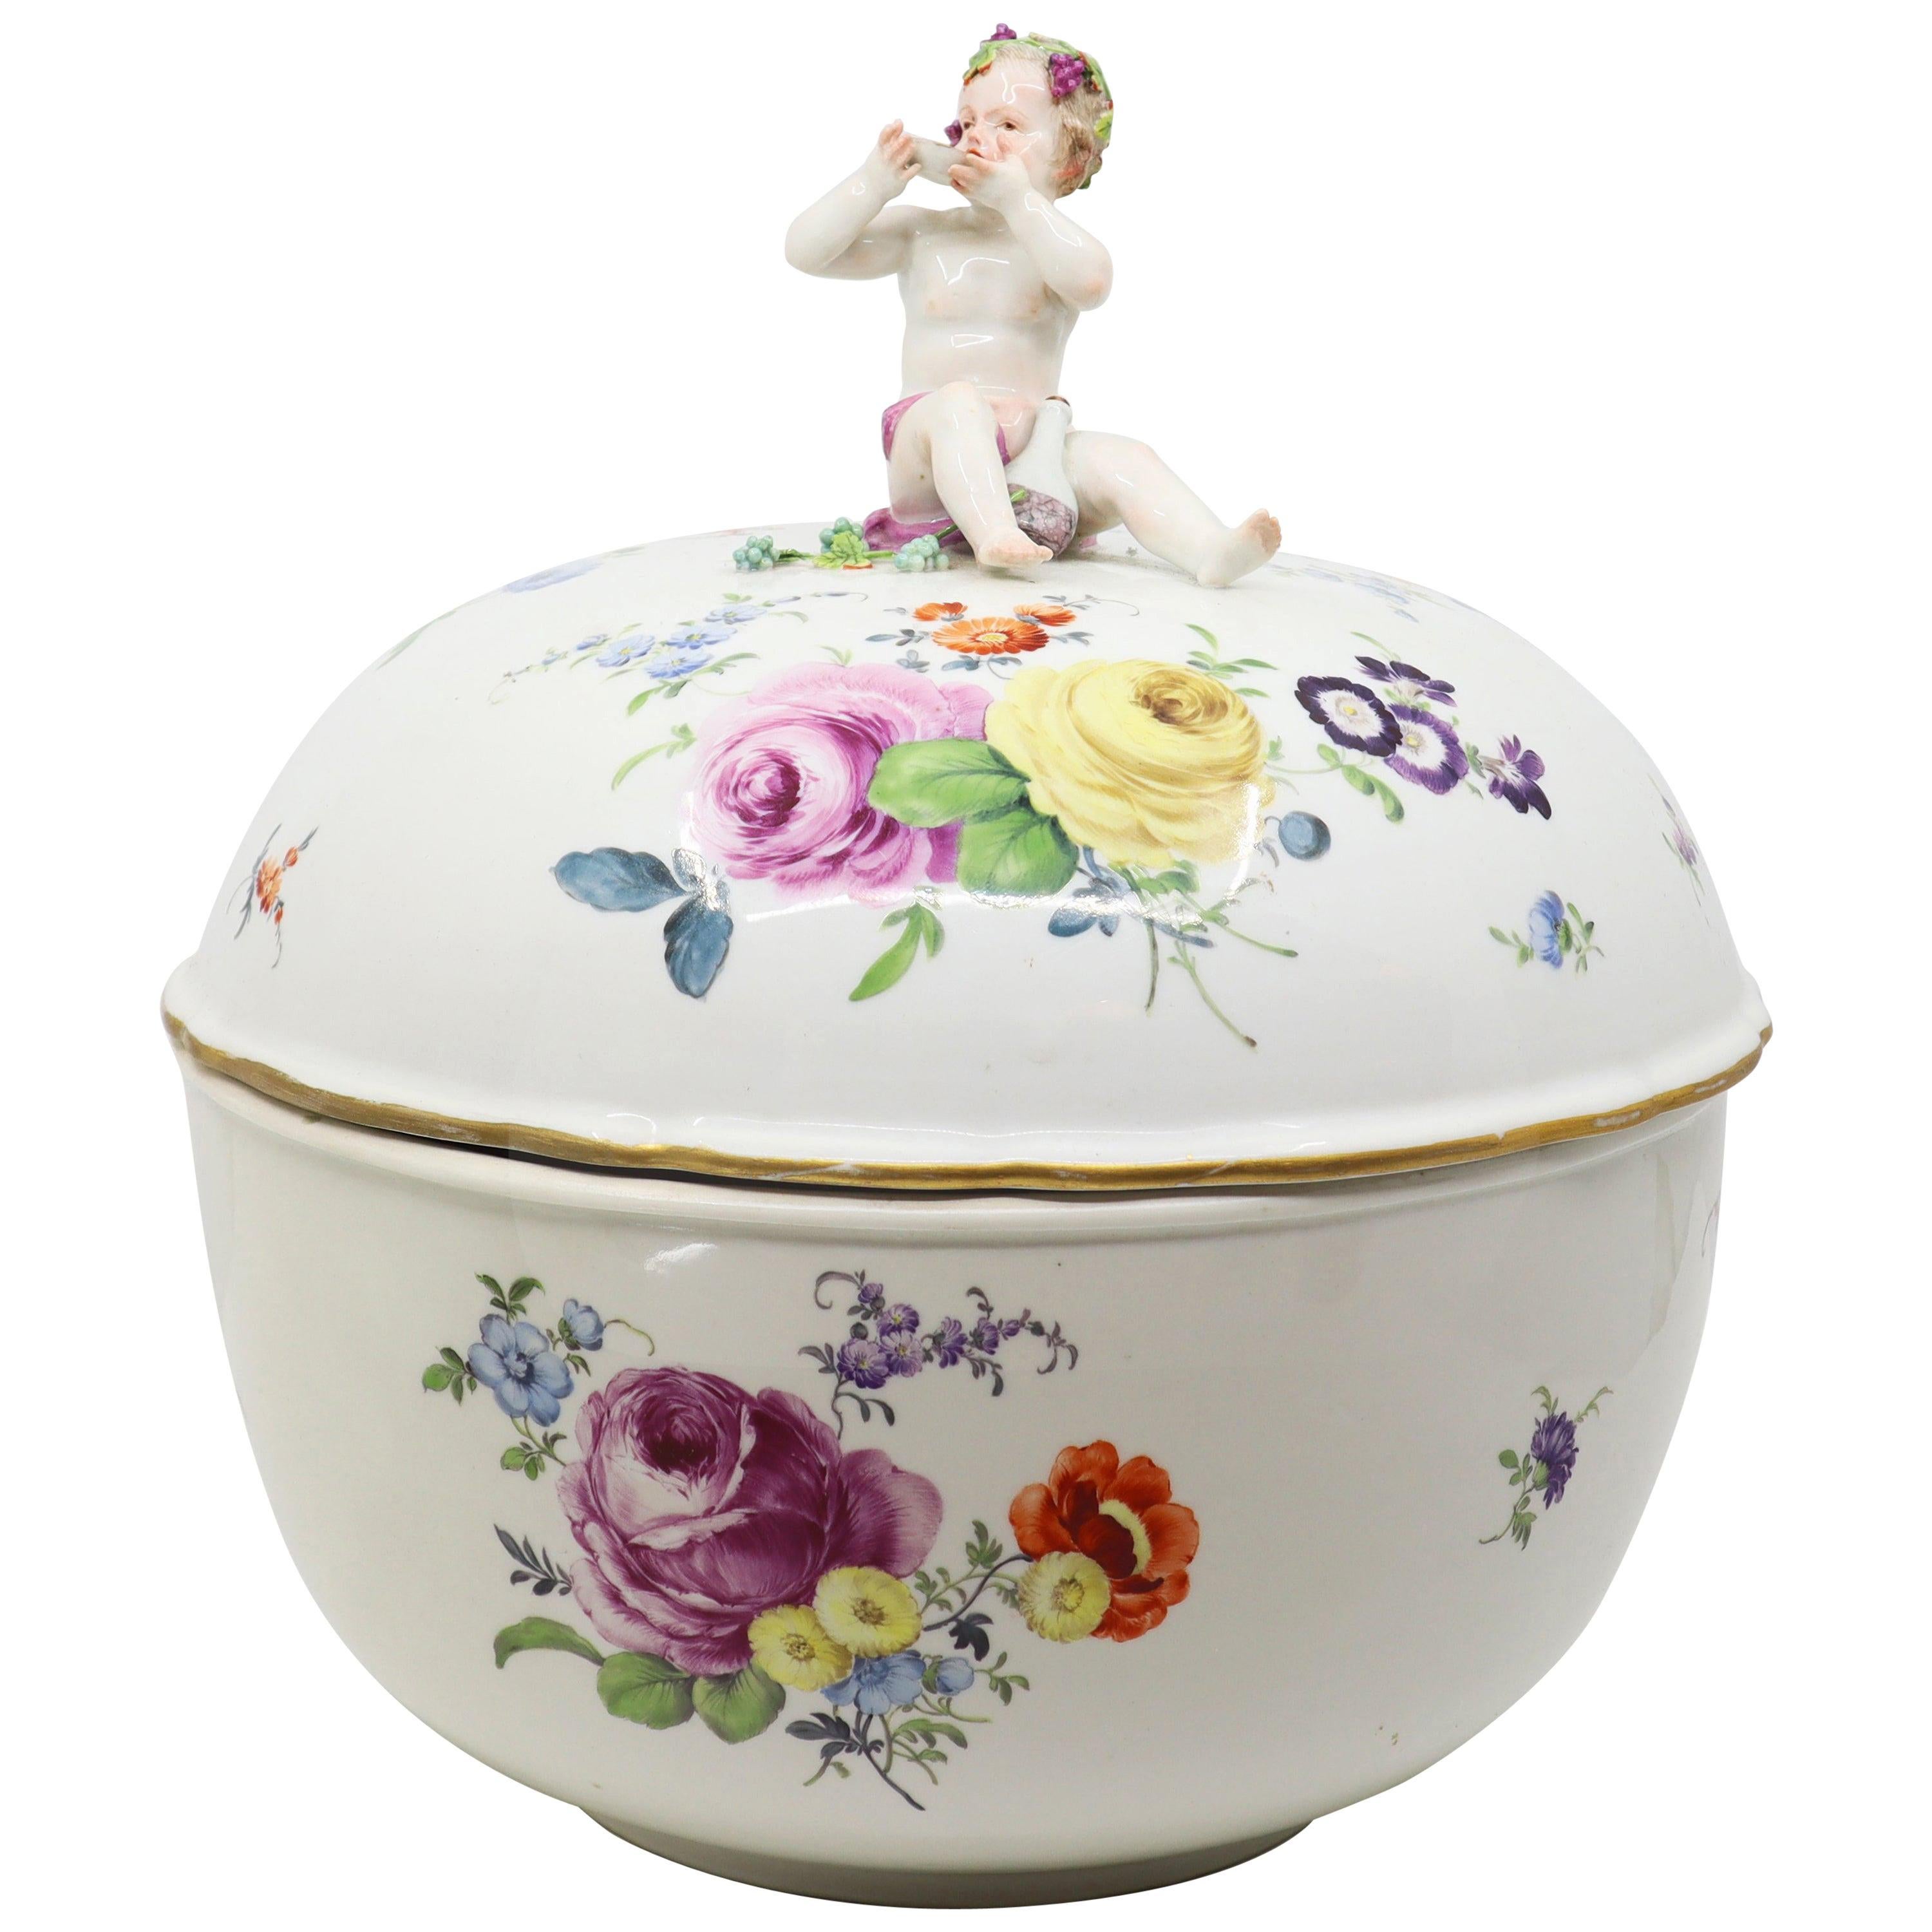 Fin du 19e siècle, bol en porcelaine de Meissen avec couvercle, allemand